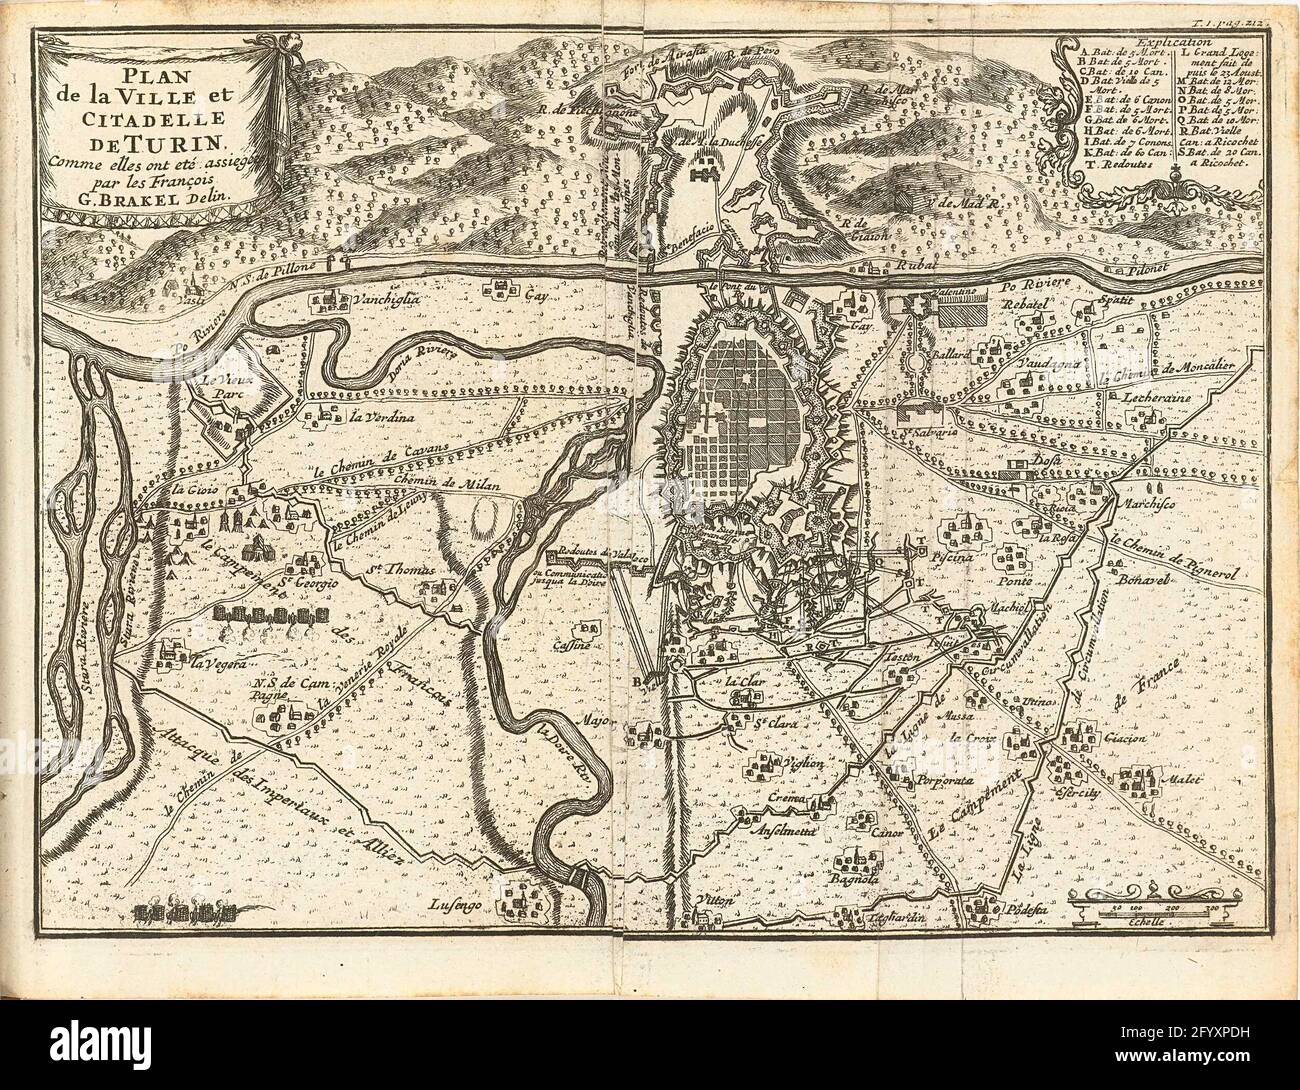 Siege of Turin, 1706; Plan De La Ville et Citadelle De Turin, Comme Elles  Dieuw Eté Assiezées Par les François. Map of Turin Bestorped by the French  but relieved by the Allies